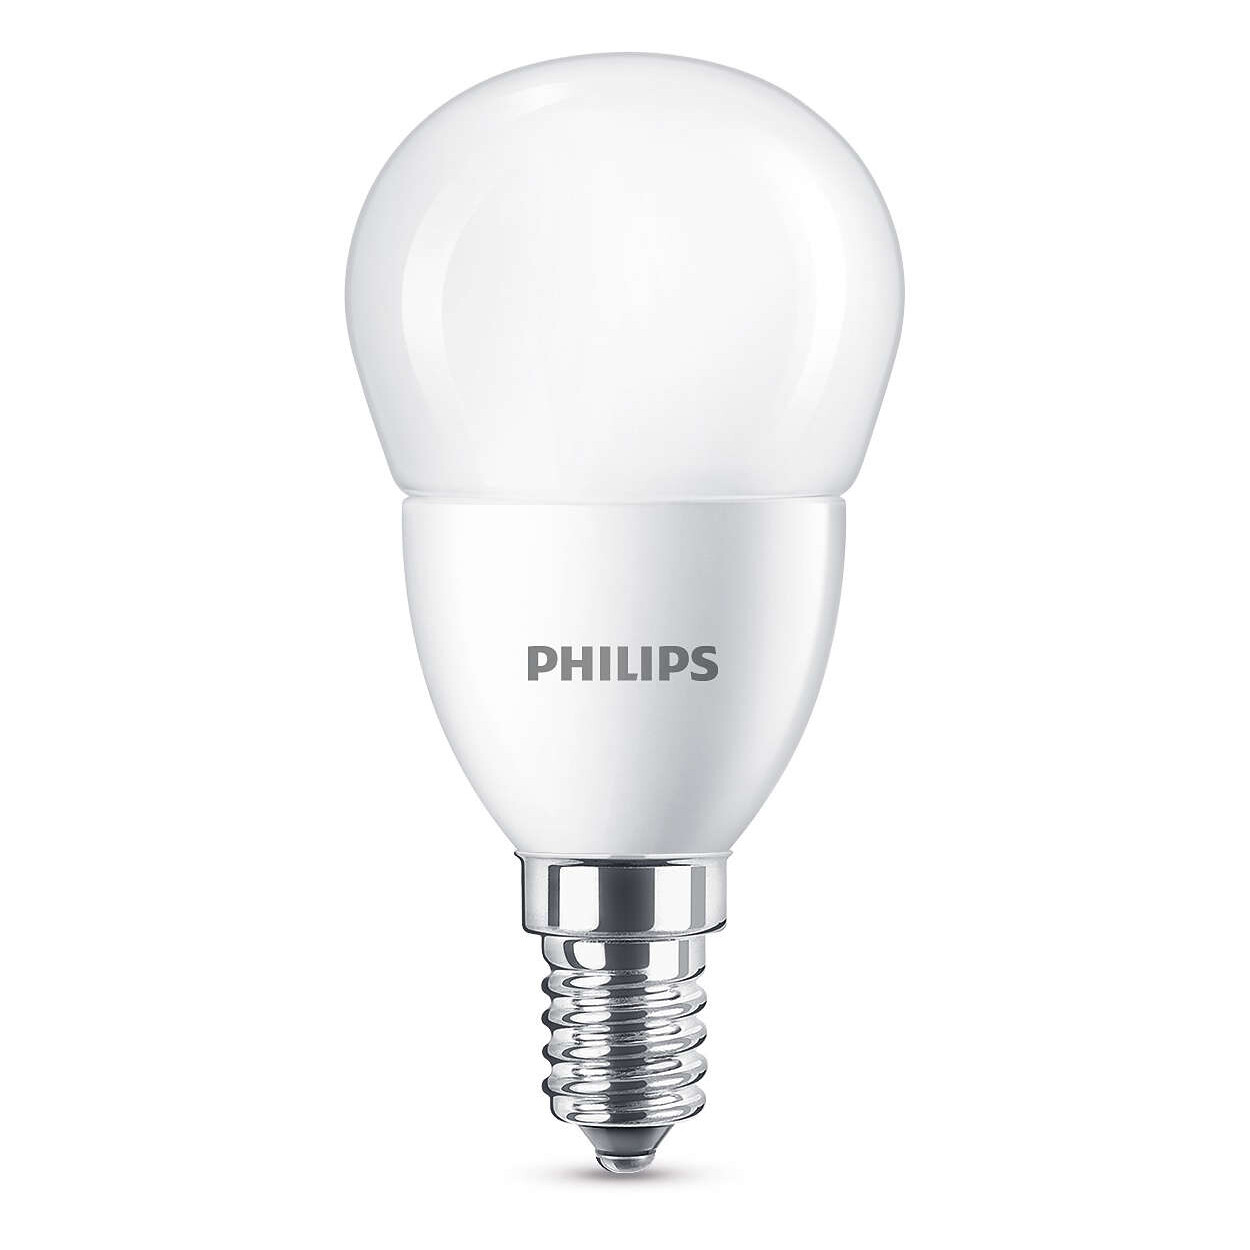 zwaard neef chatten Bulb LED 7W (806lm) E14 - Philips - Buy online